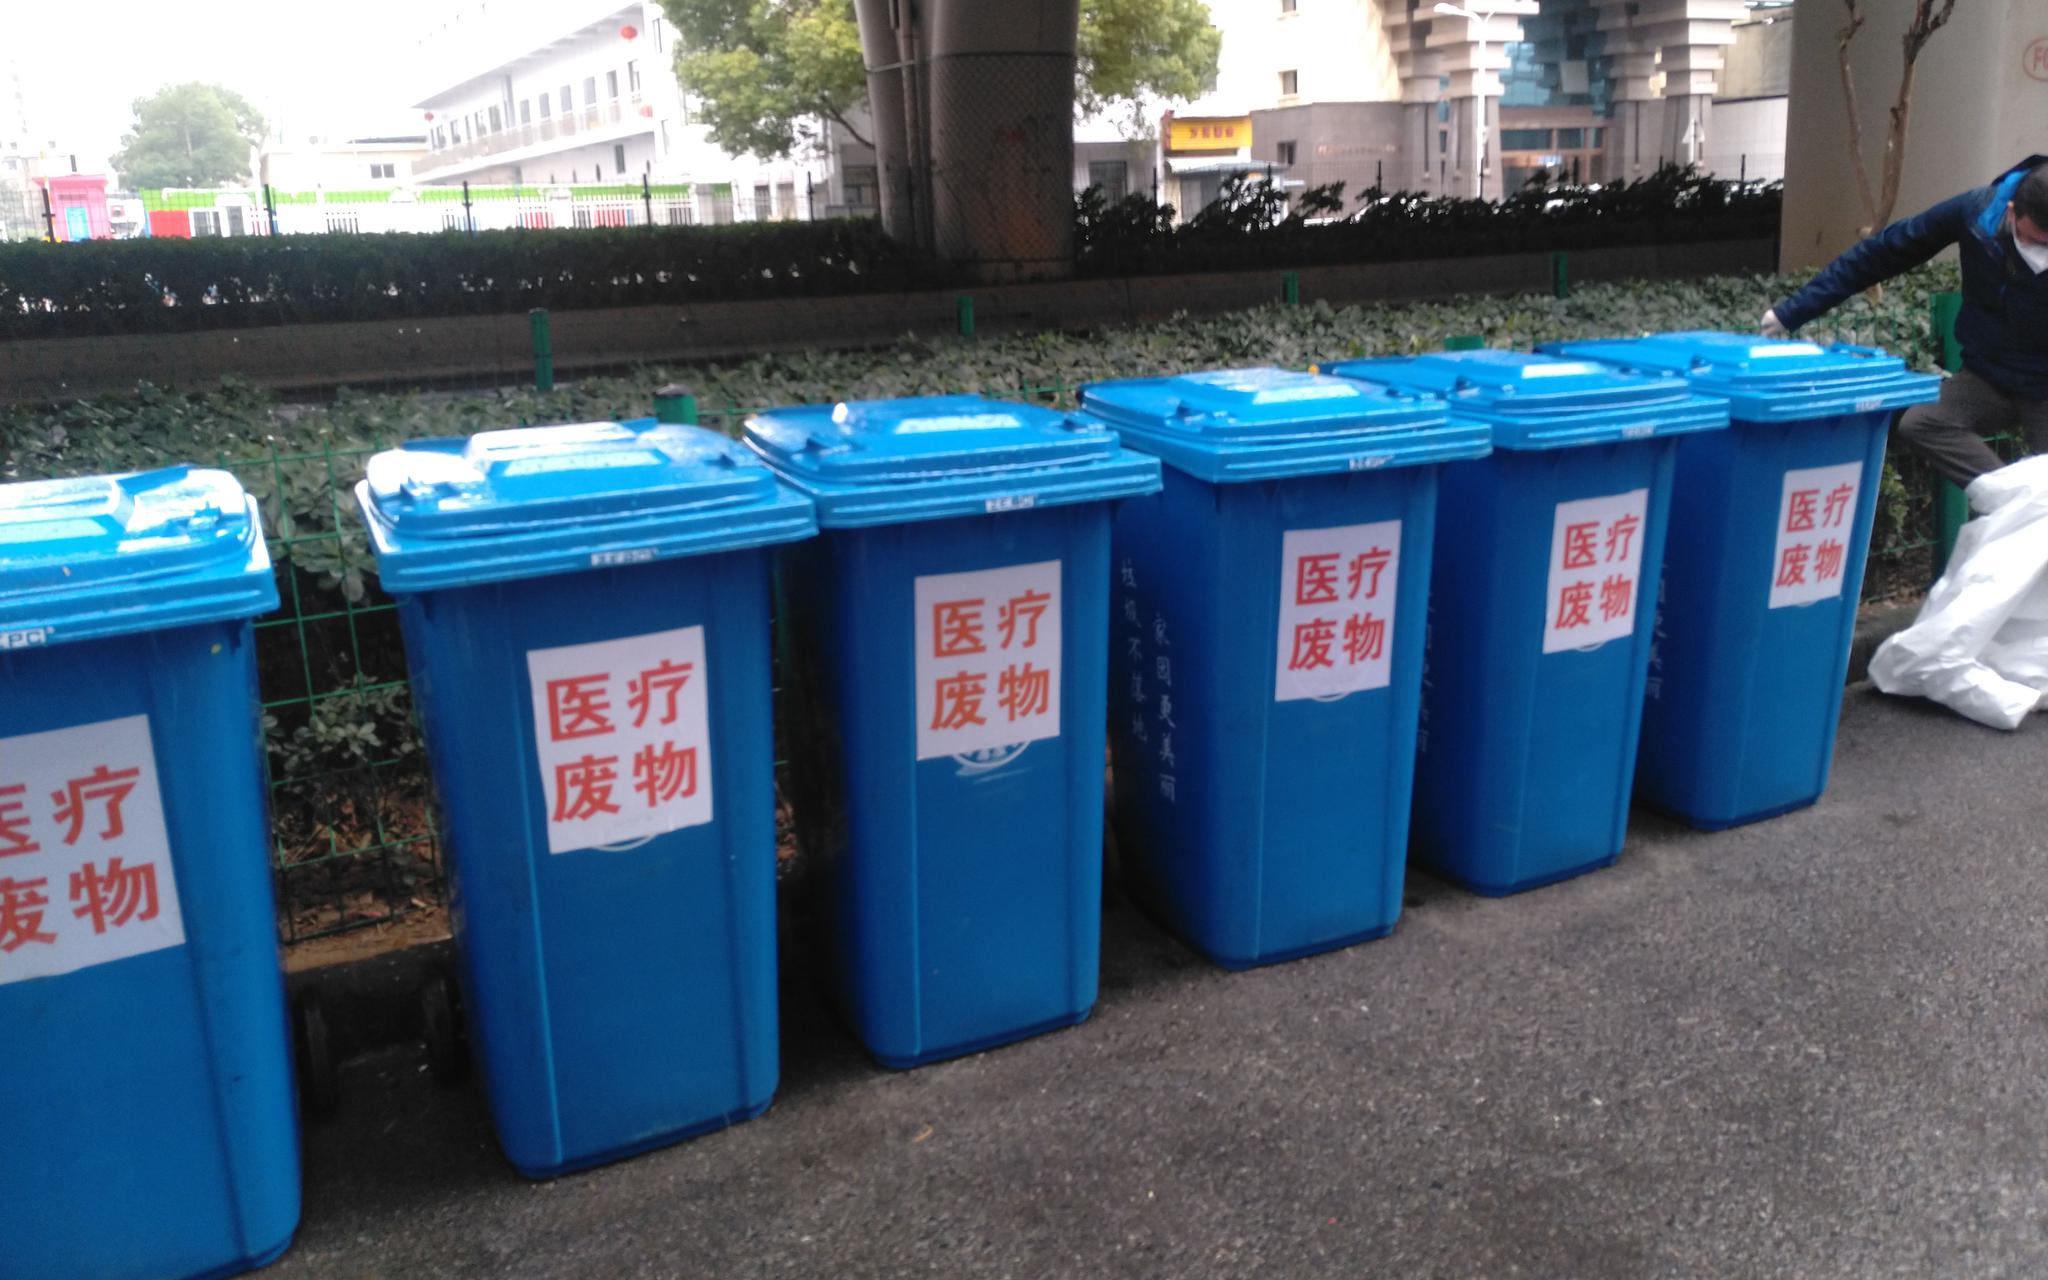 洪山区某出院者隔离点门口的医疗废物专用垃圾桶。新京报记者 海阳 摄